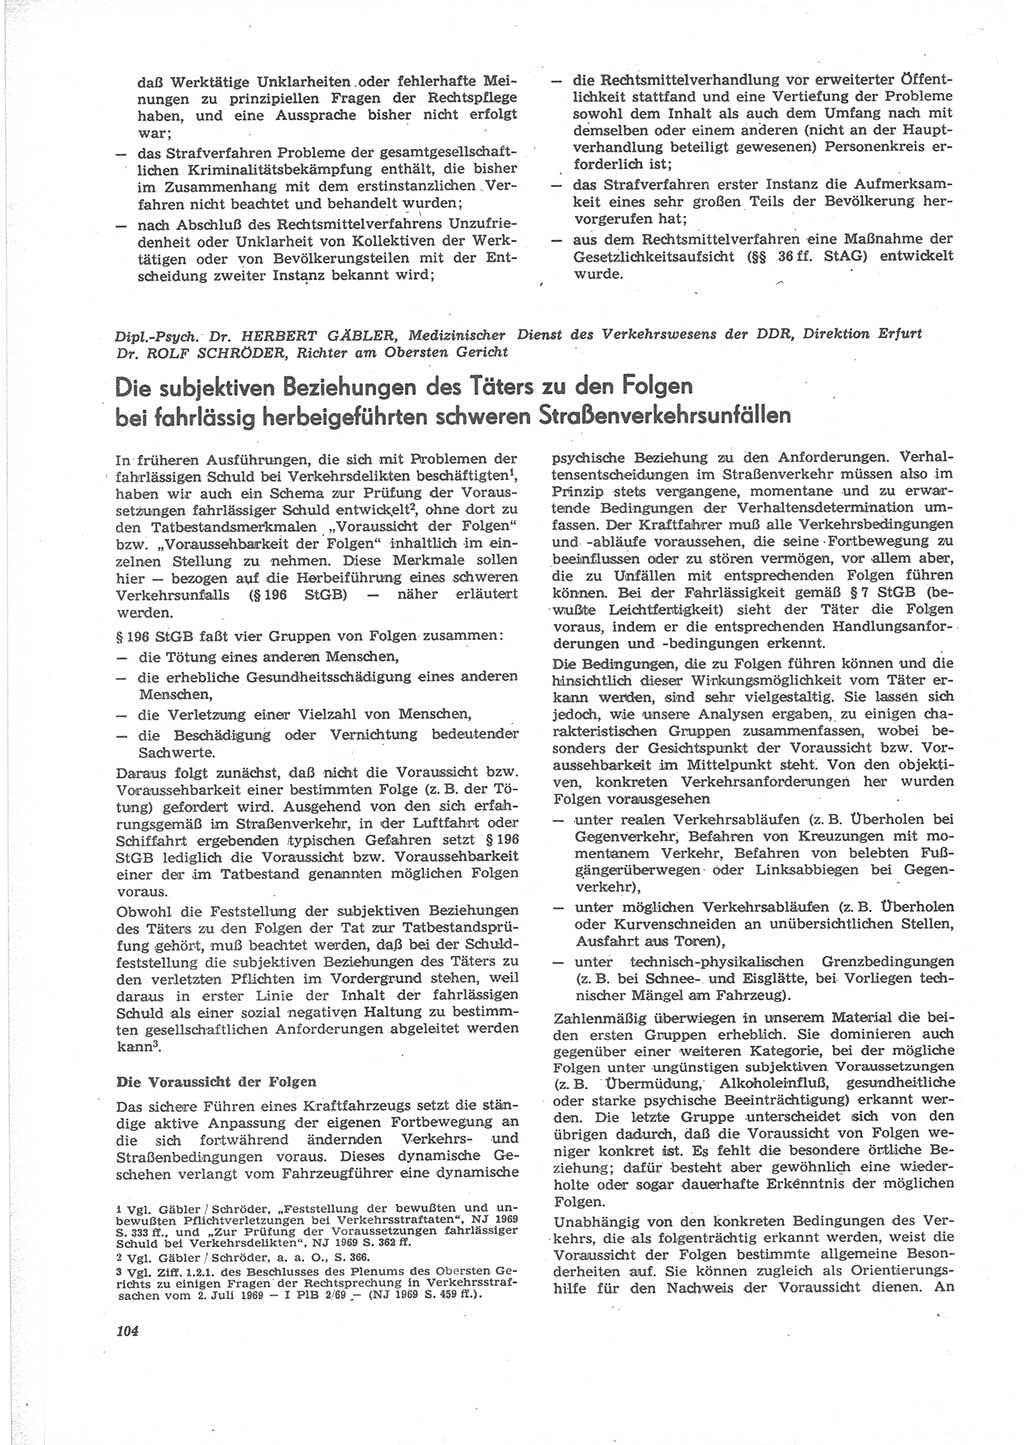 Neue Justiz (NJ), Zeitschrift für Recht und Rechtswissenschaft [Deutsche Demokratische Republik (DDR)], 24. Jahrgang 1970, Seite 104 (NJ DDR 1970, S. 104)